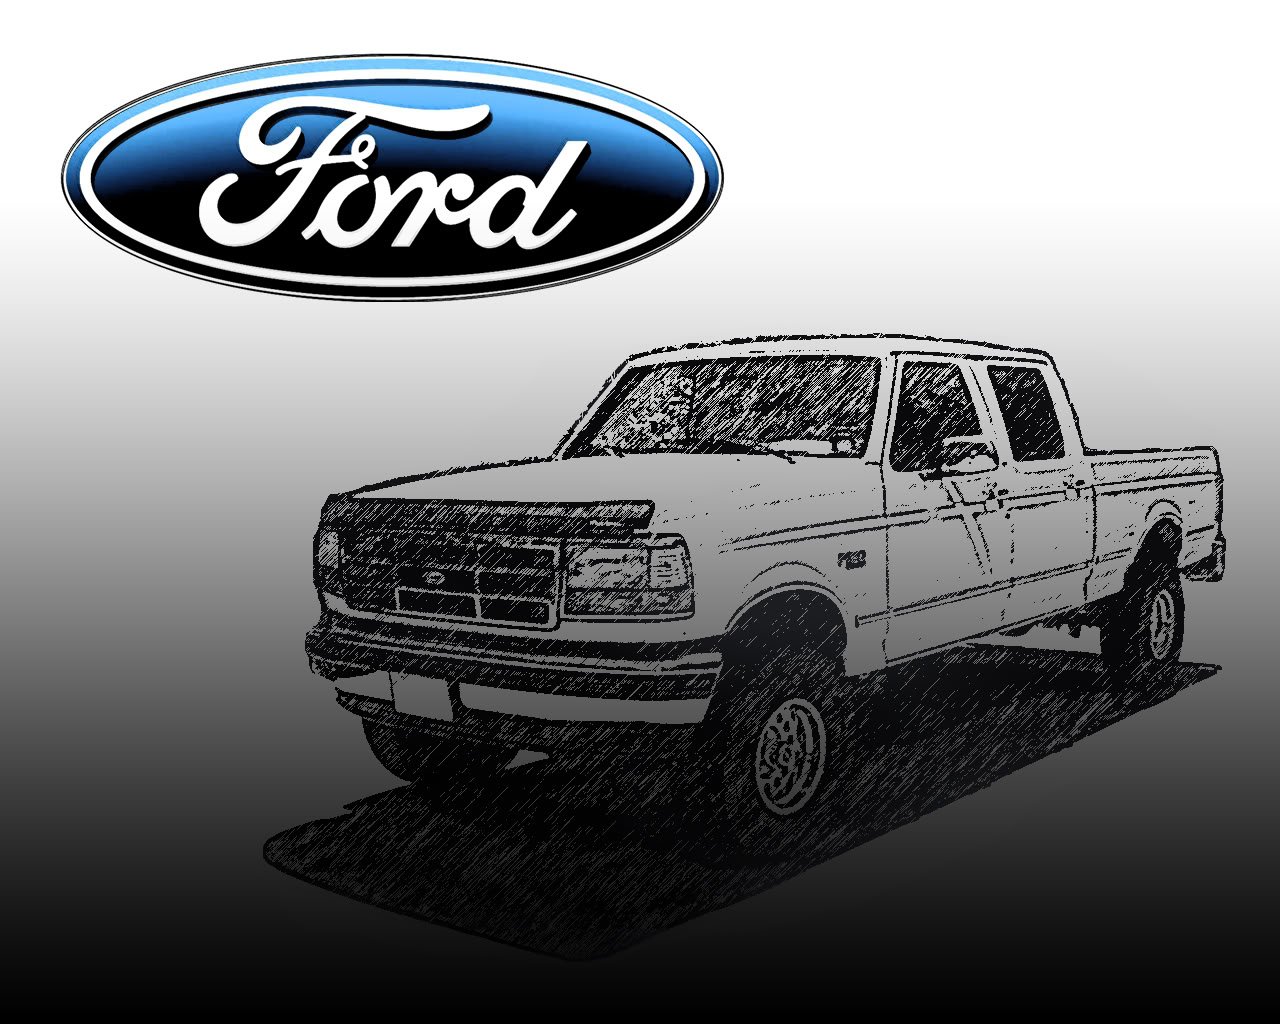 Ford Truck wallpaper | 1280x1024 | #47972